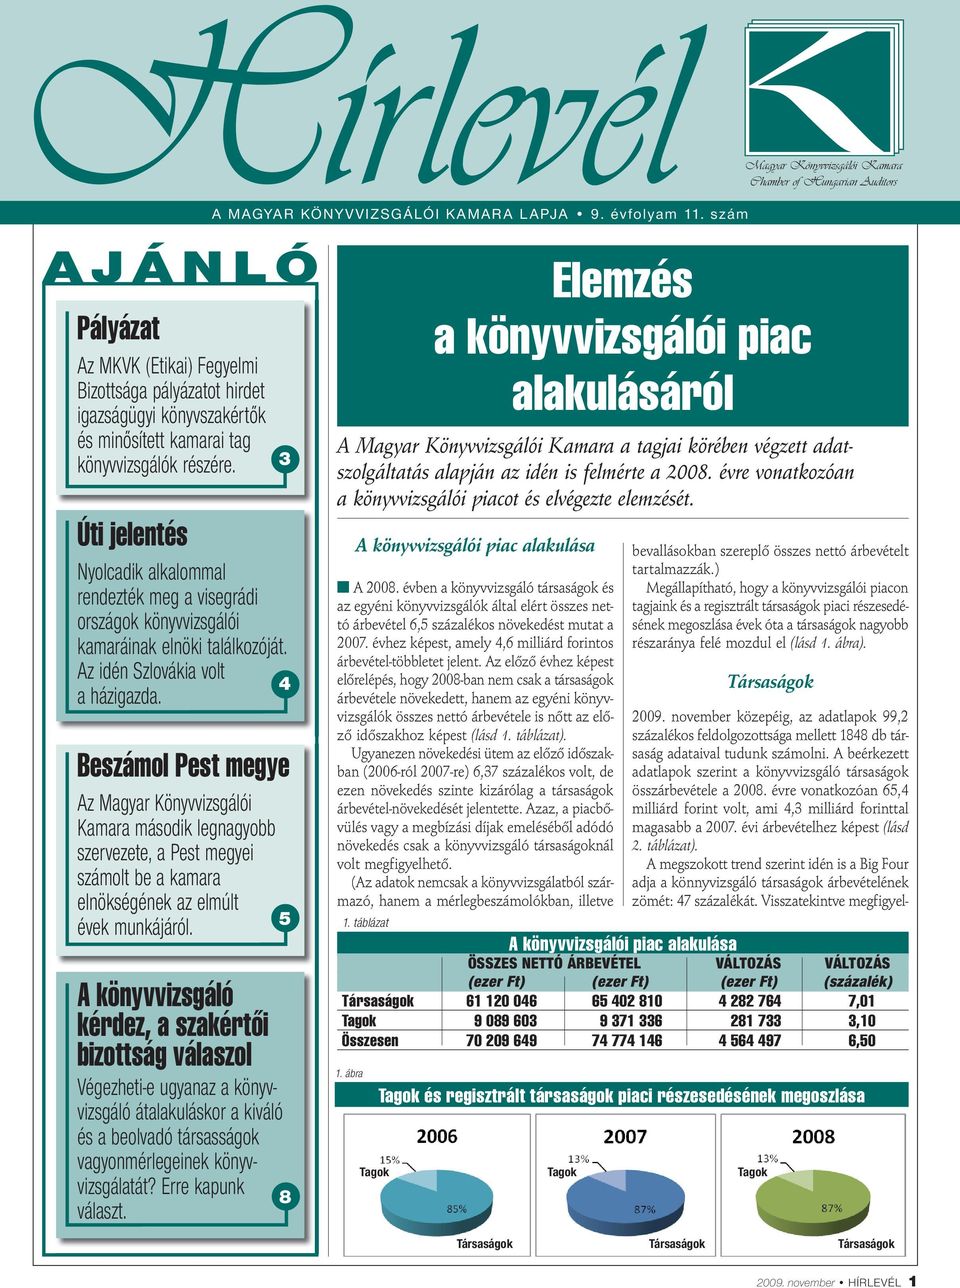 Beszámol Pest megye Az Magyar Könyvvizsgálói Kamara második legnagyobb szervezete, a Pest megyei számolt be a kamara elnökségének az elmúlt évek munkájáról.